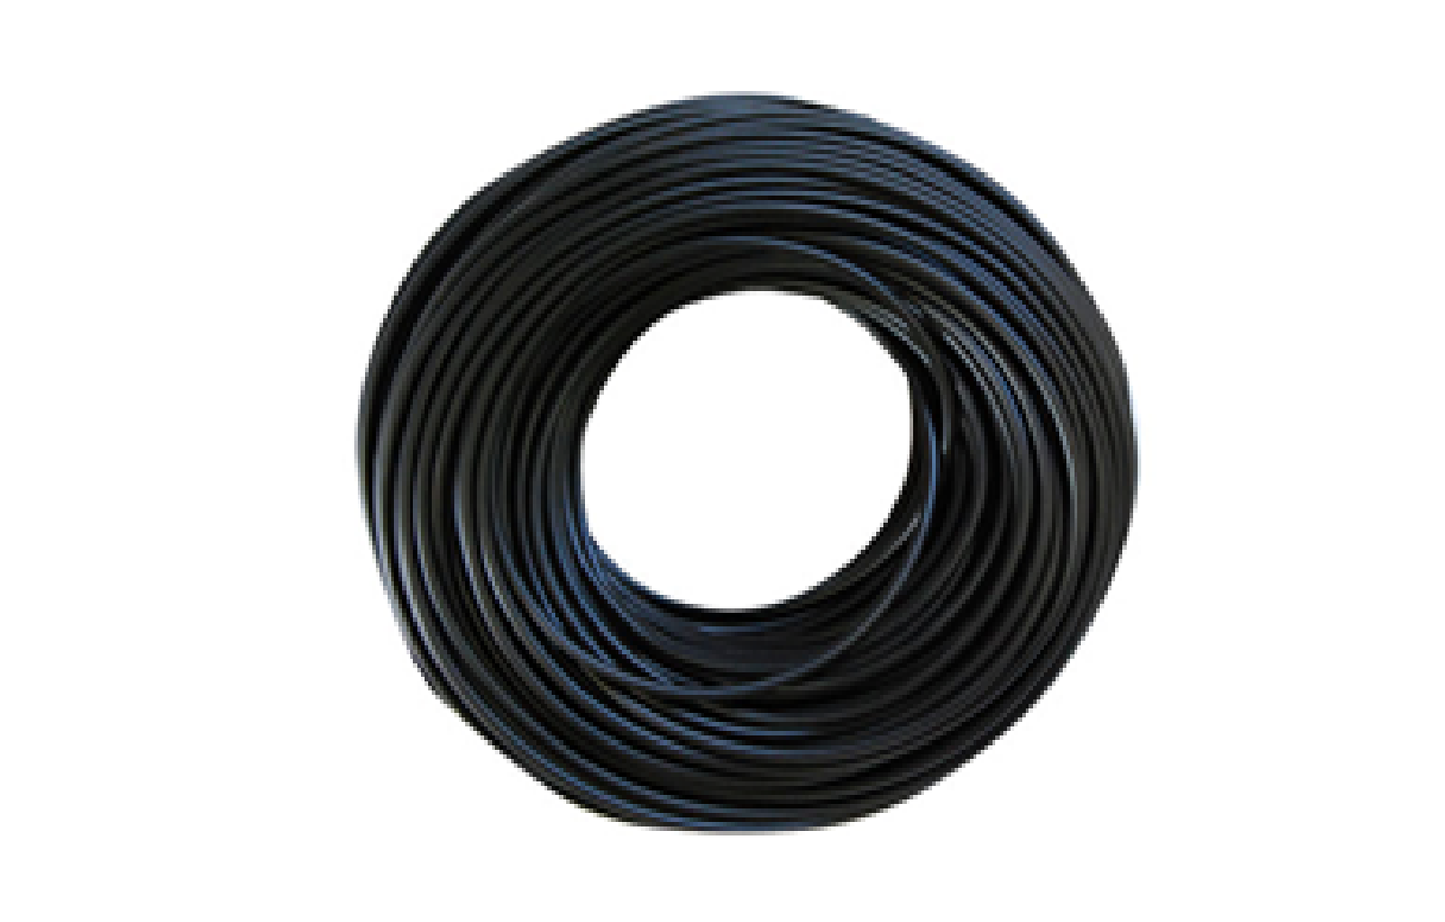 HT cable Black 3 Core /30m Slimline